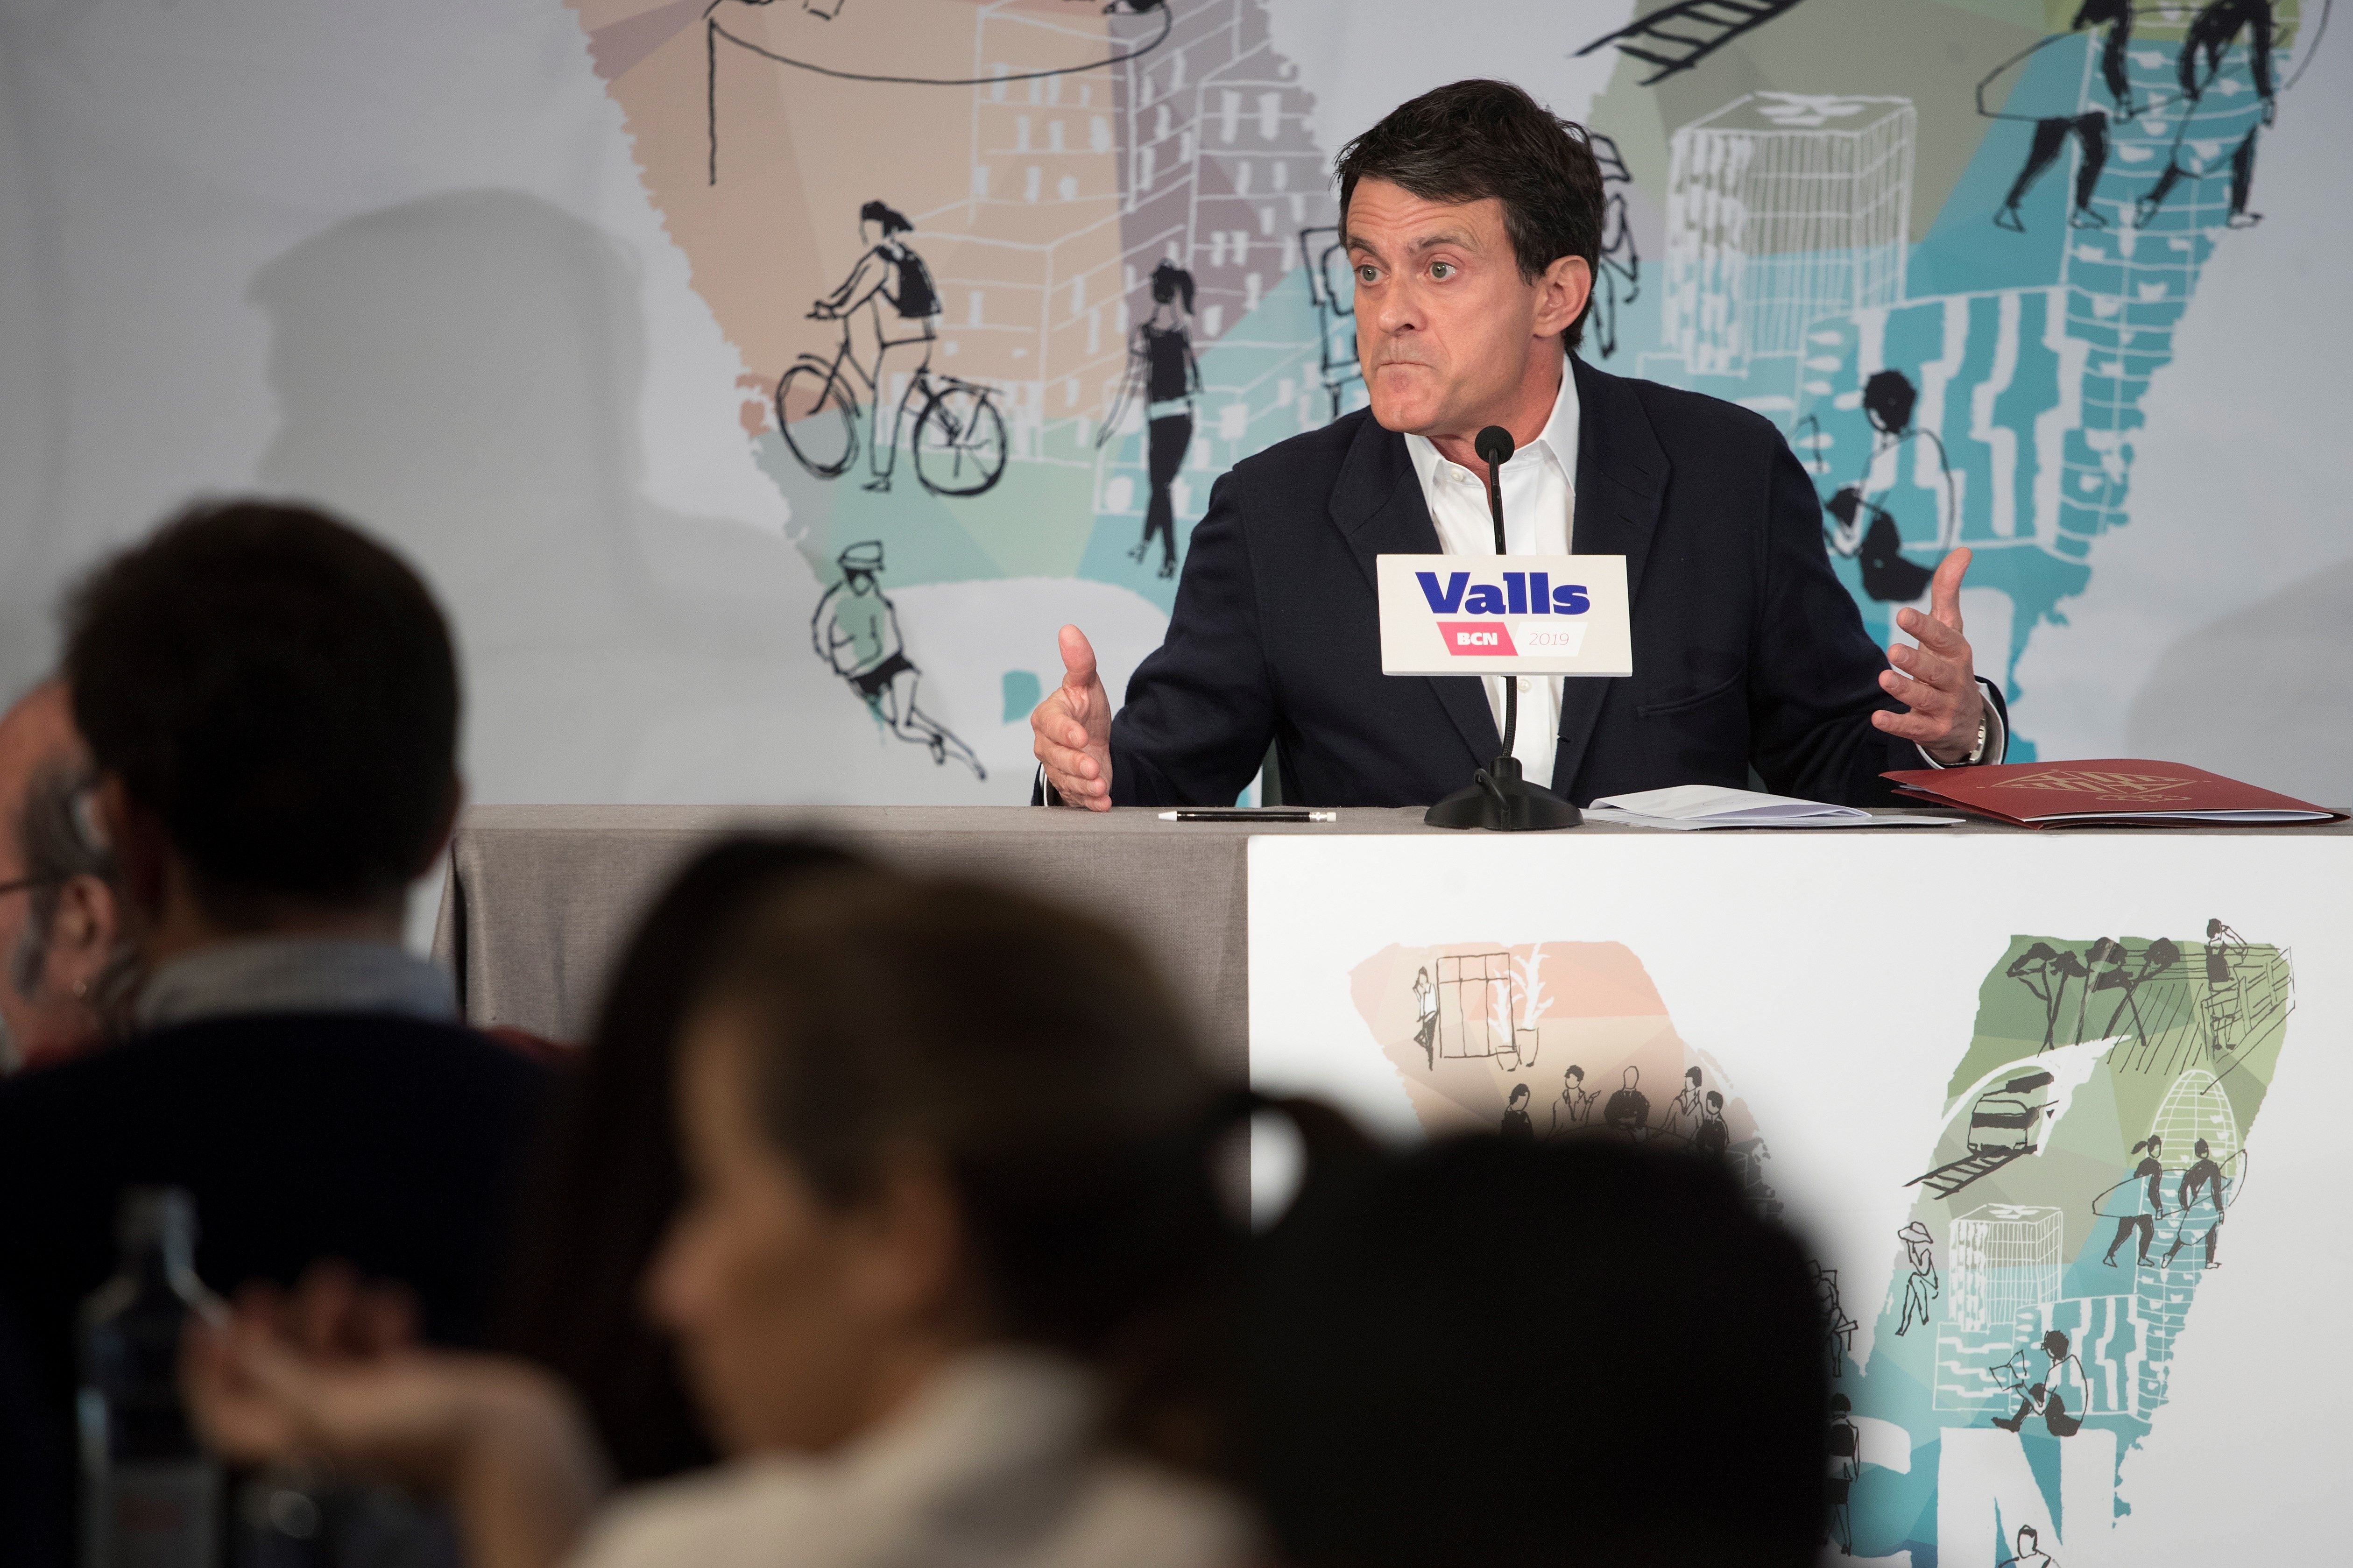 Valls roda de premsa ganyota EFE